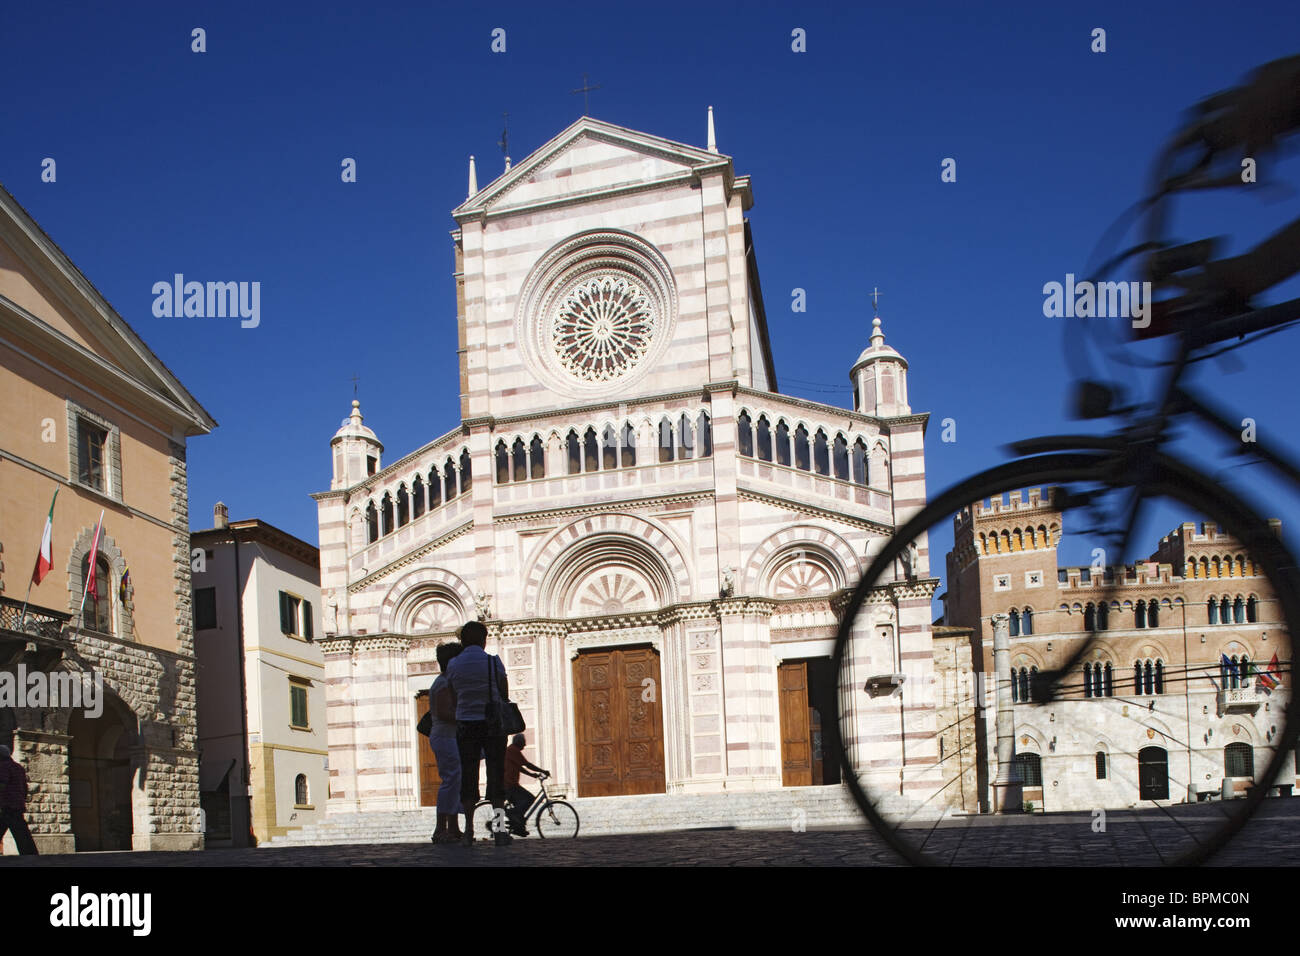 San Lorenzo nella Cattedrale, Piazza Dante Alighieri, Grosseto, Tuscany, Italy Stock Photo